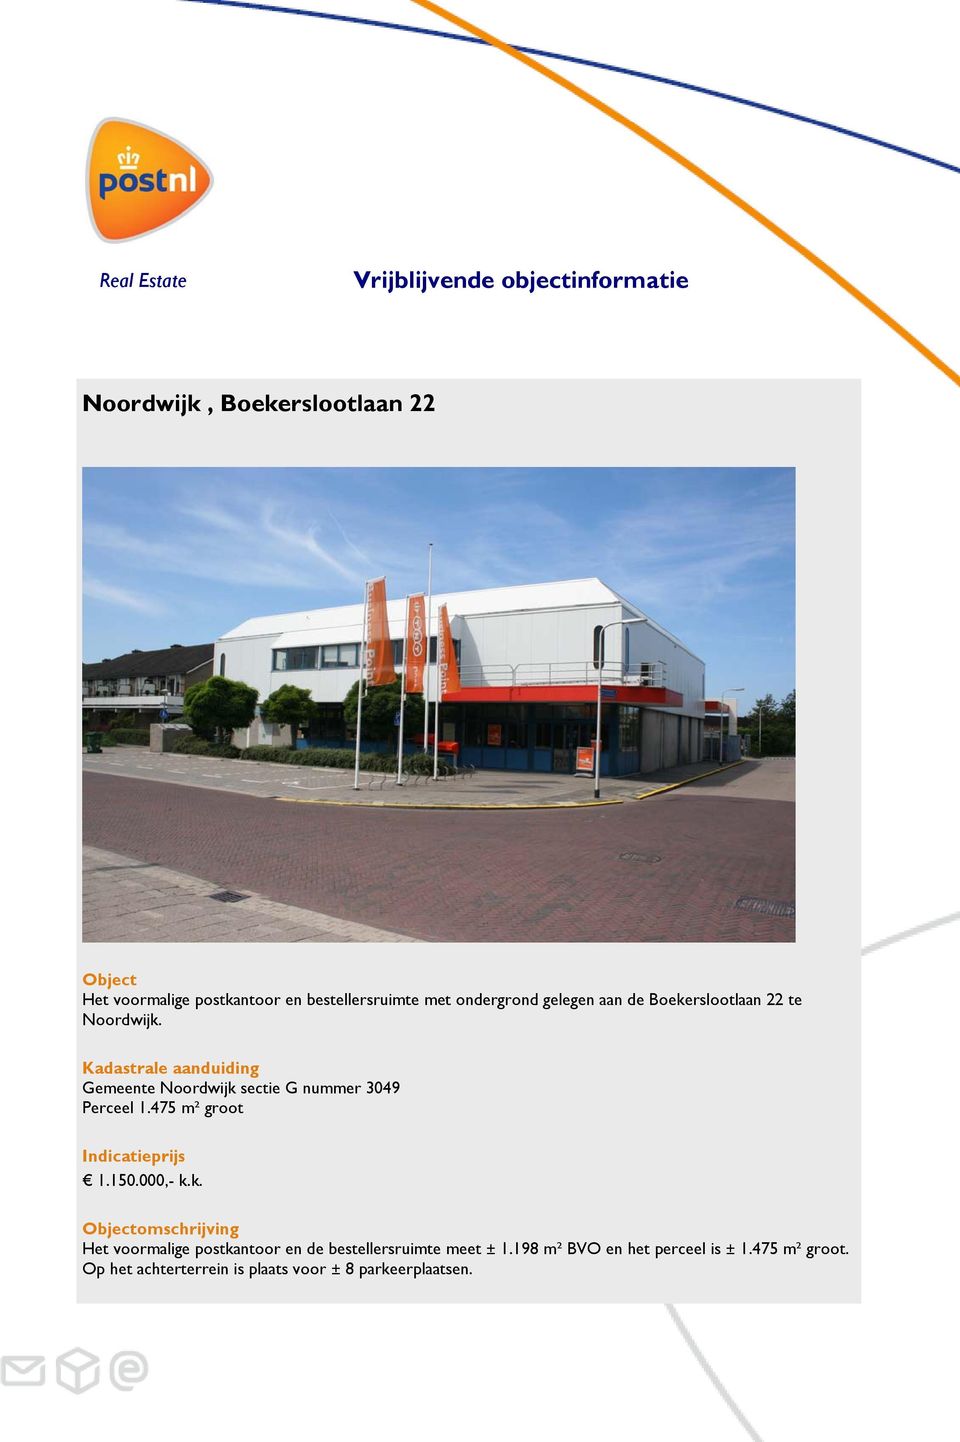 Kadastrale aanduiding Gemeente Noordwijk sectie G nummer 3049 Perceel 1.475 m² groot Indicatieprijs 1.150.000,- k.k. Objectomschrijving Het voormalige postkantoor en de bestellersruimte meet ± 1.